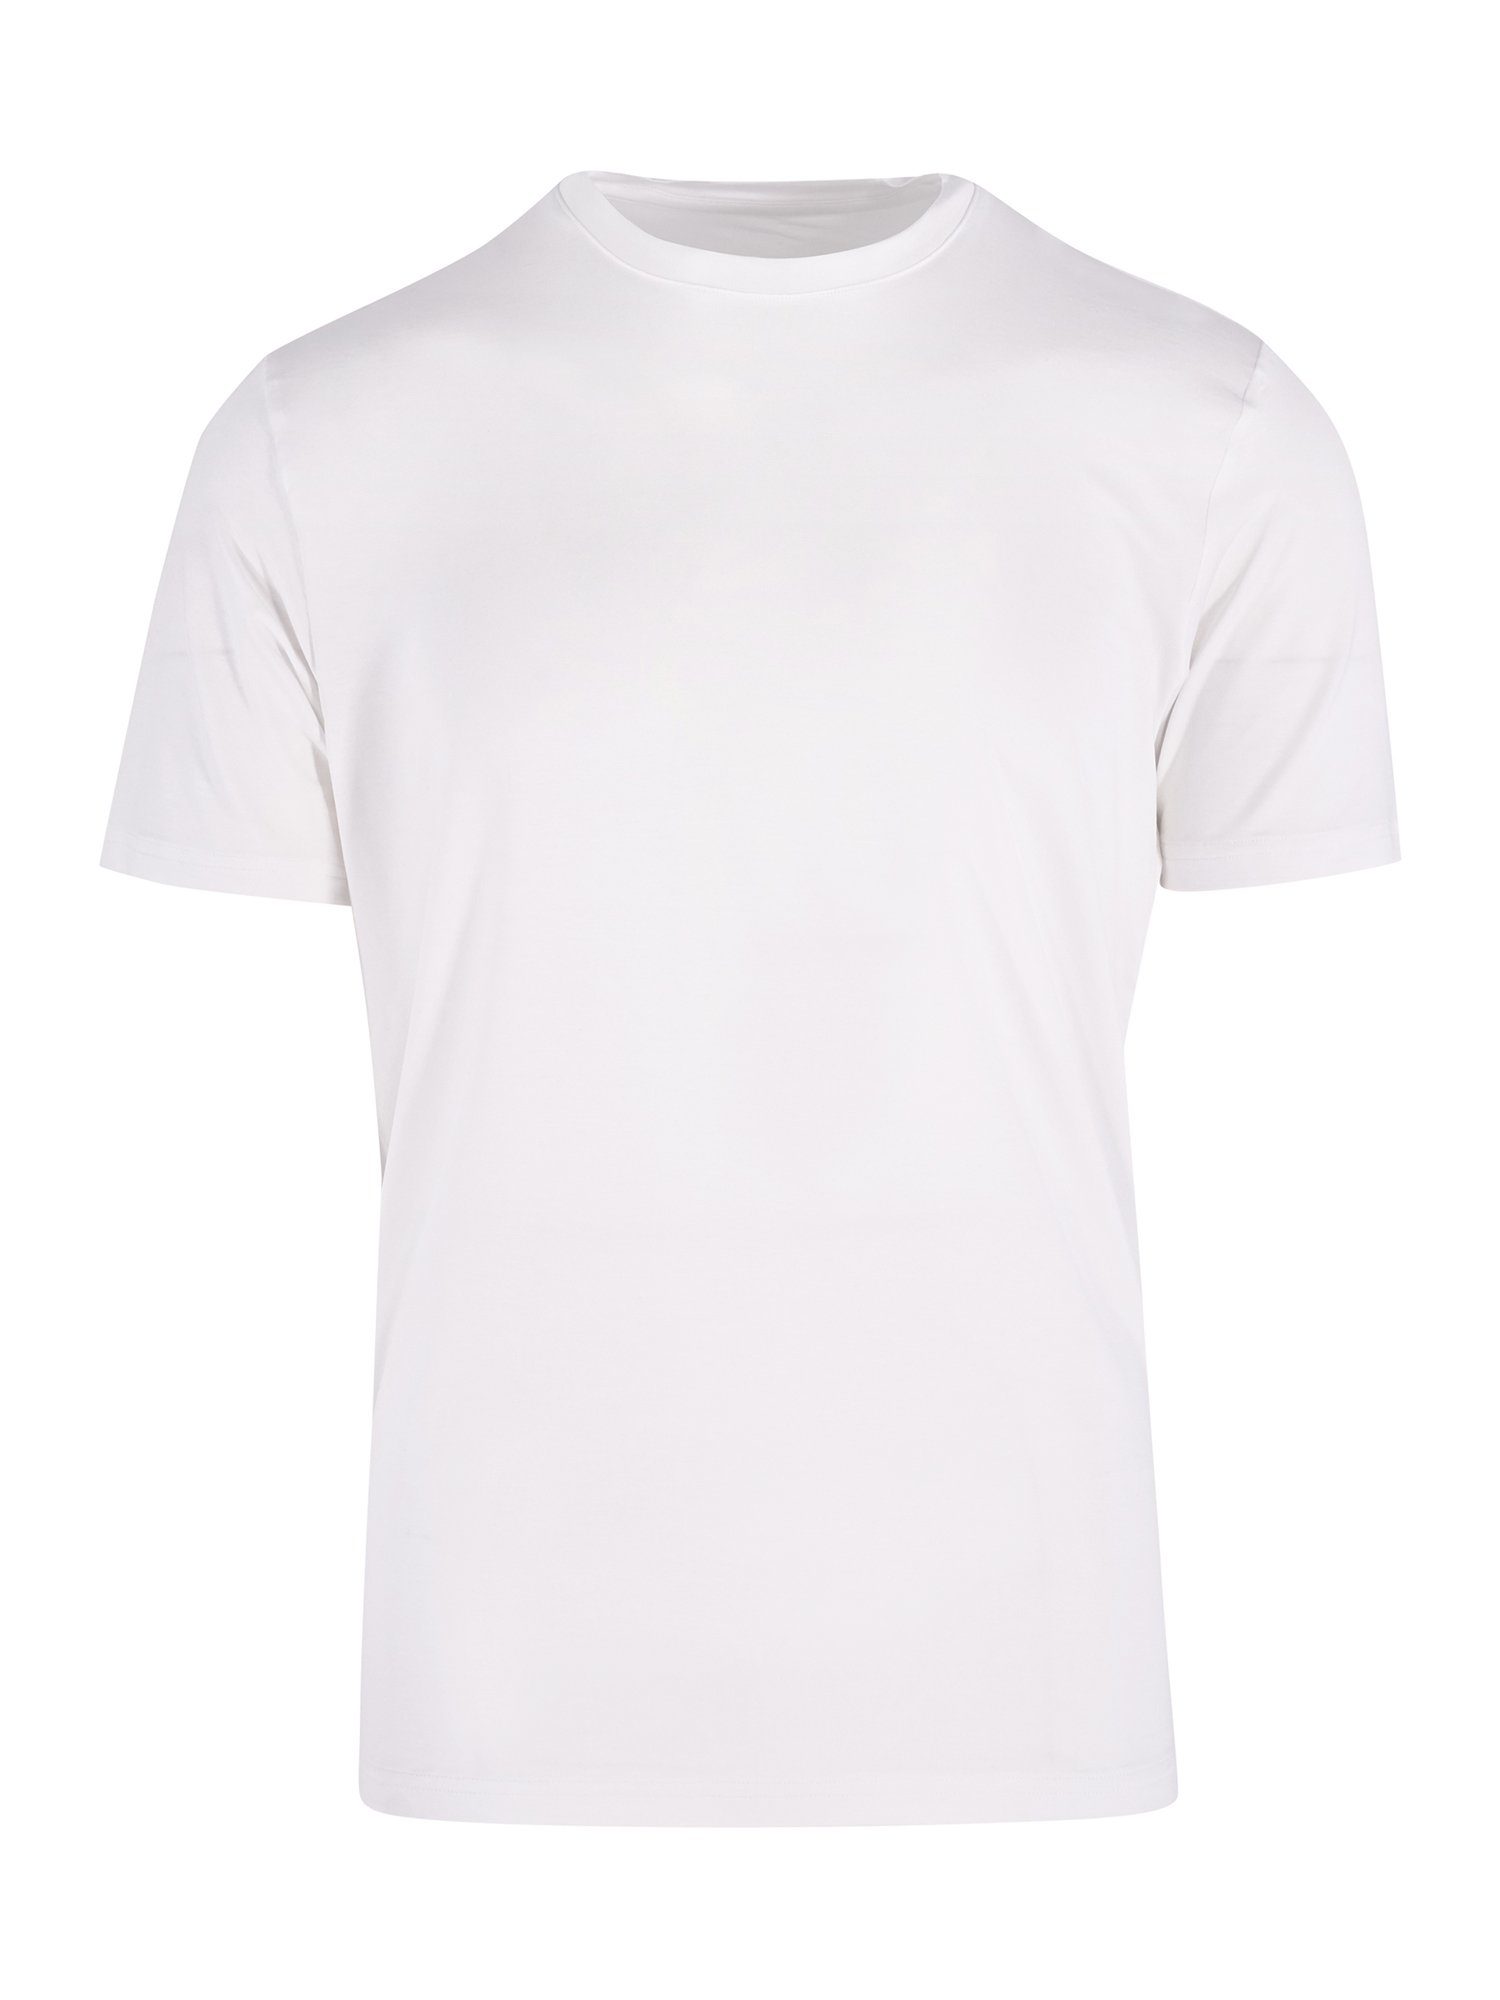 BlackSpade T-Shirt Silver weiß